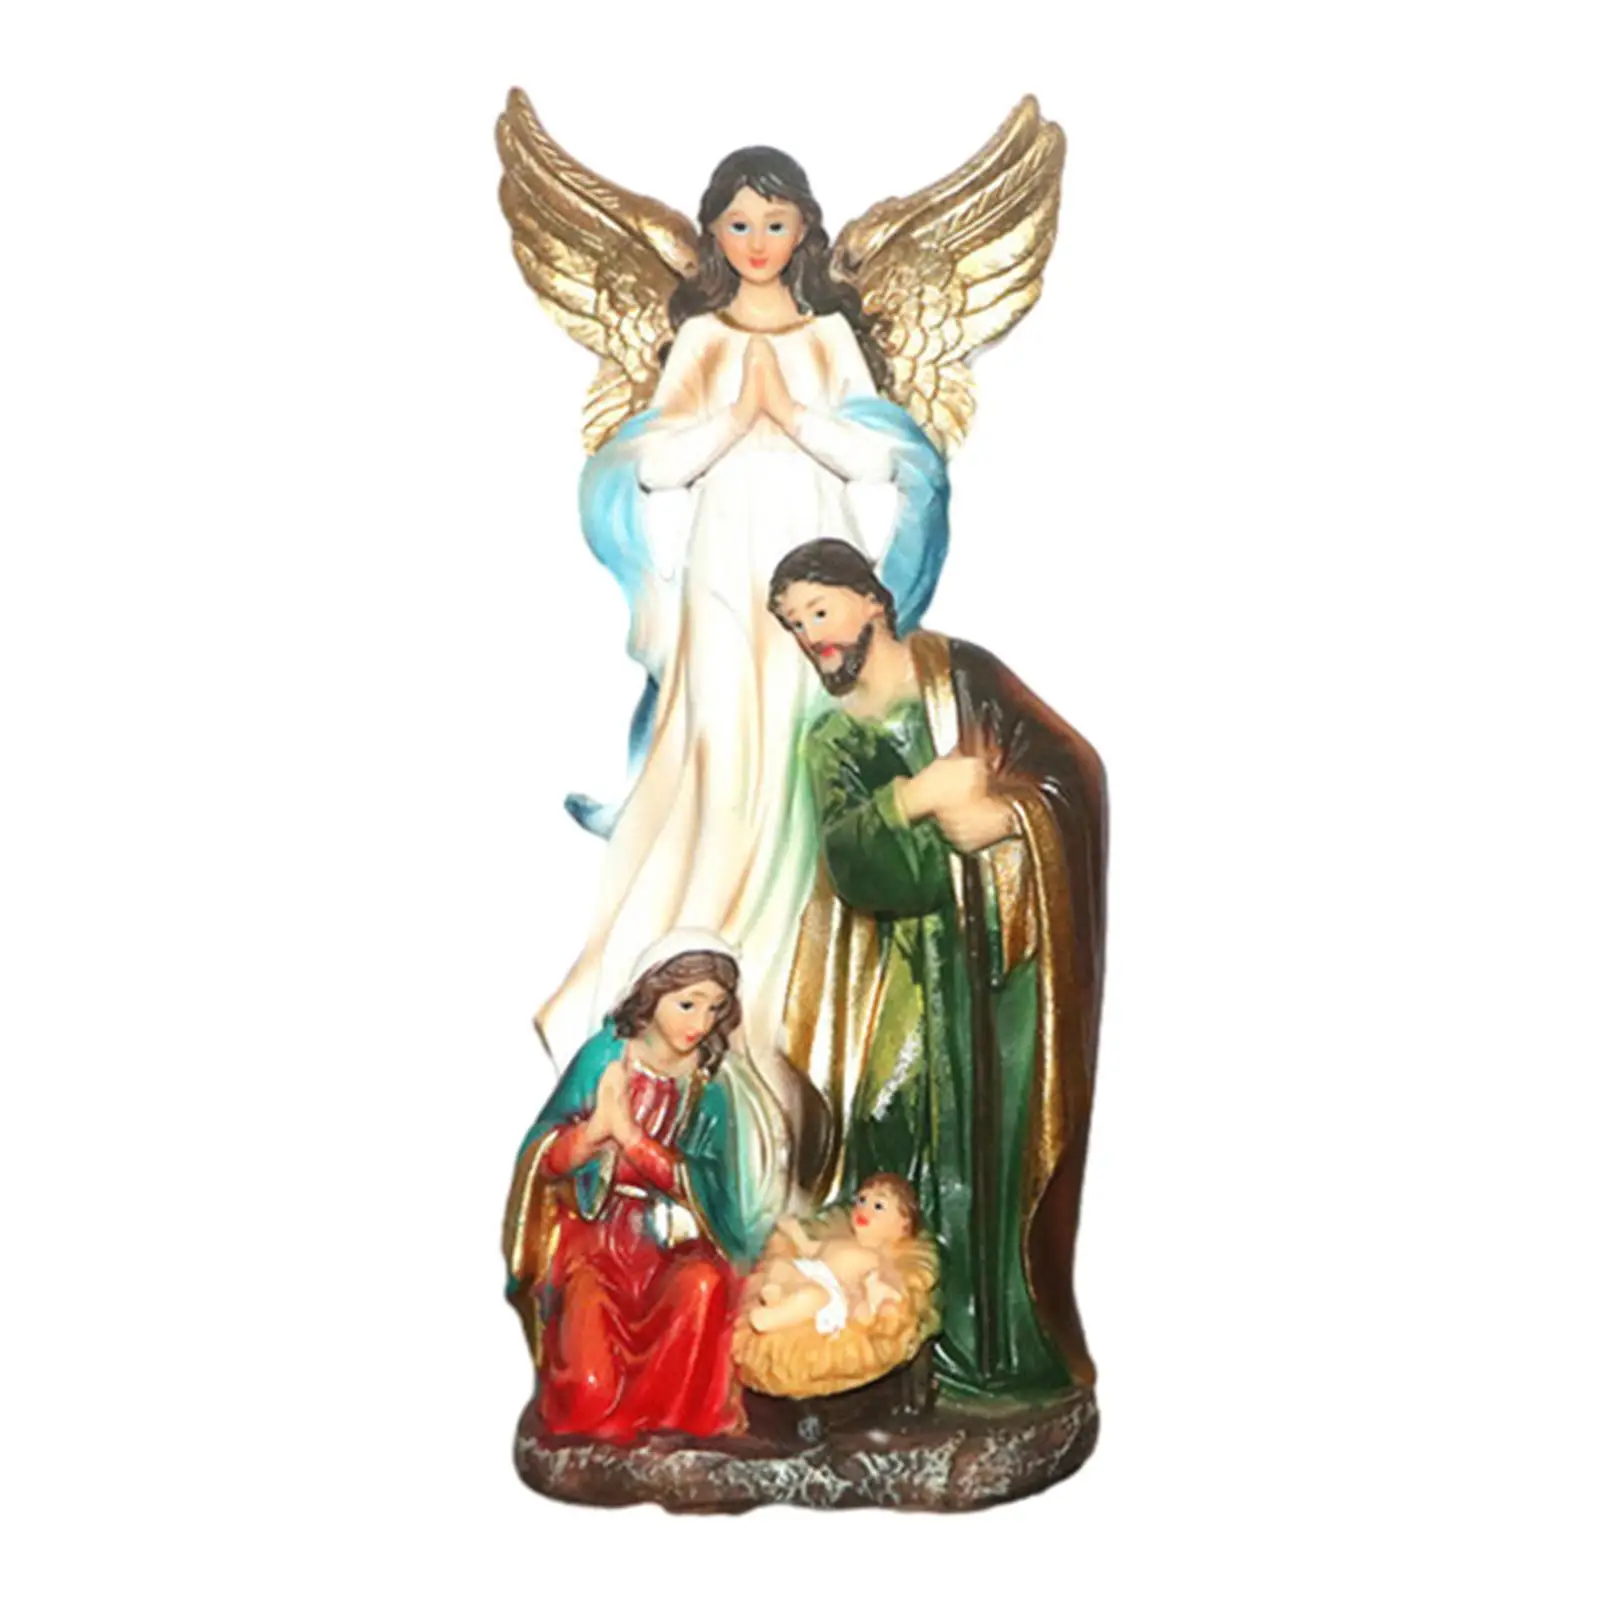 Jesus Manger Scene Figurine Handpainted Religious Resin Spiritual Jesus Statue for Bedroom Shelf Home Living Room Desk